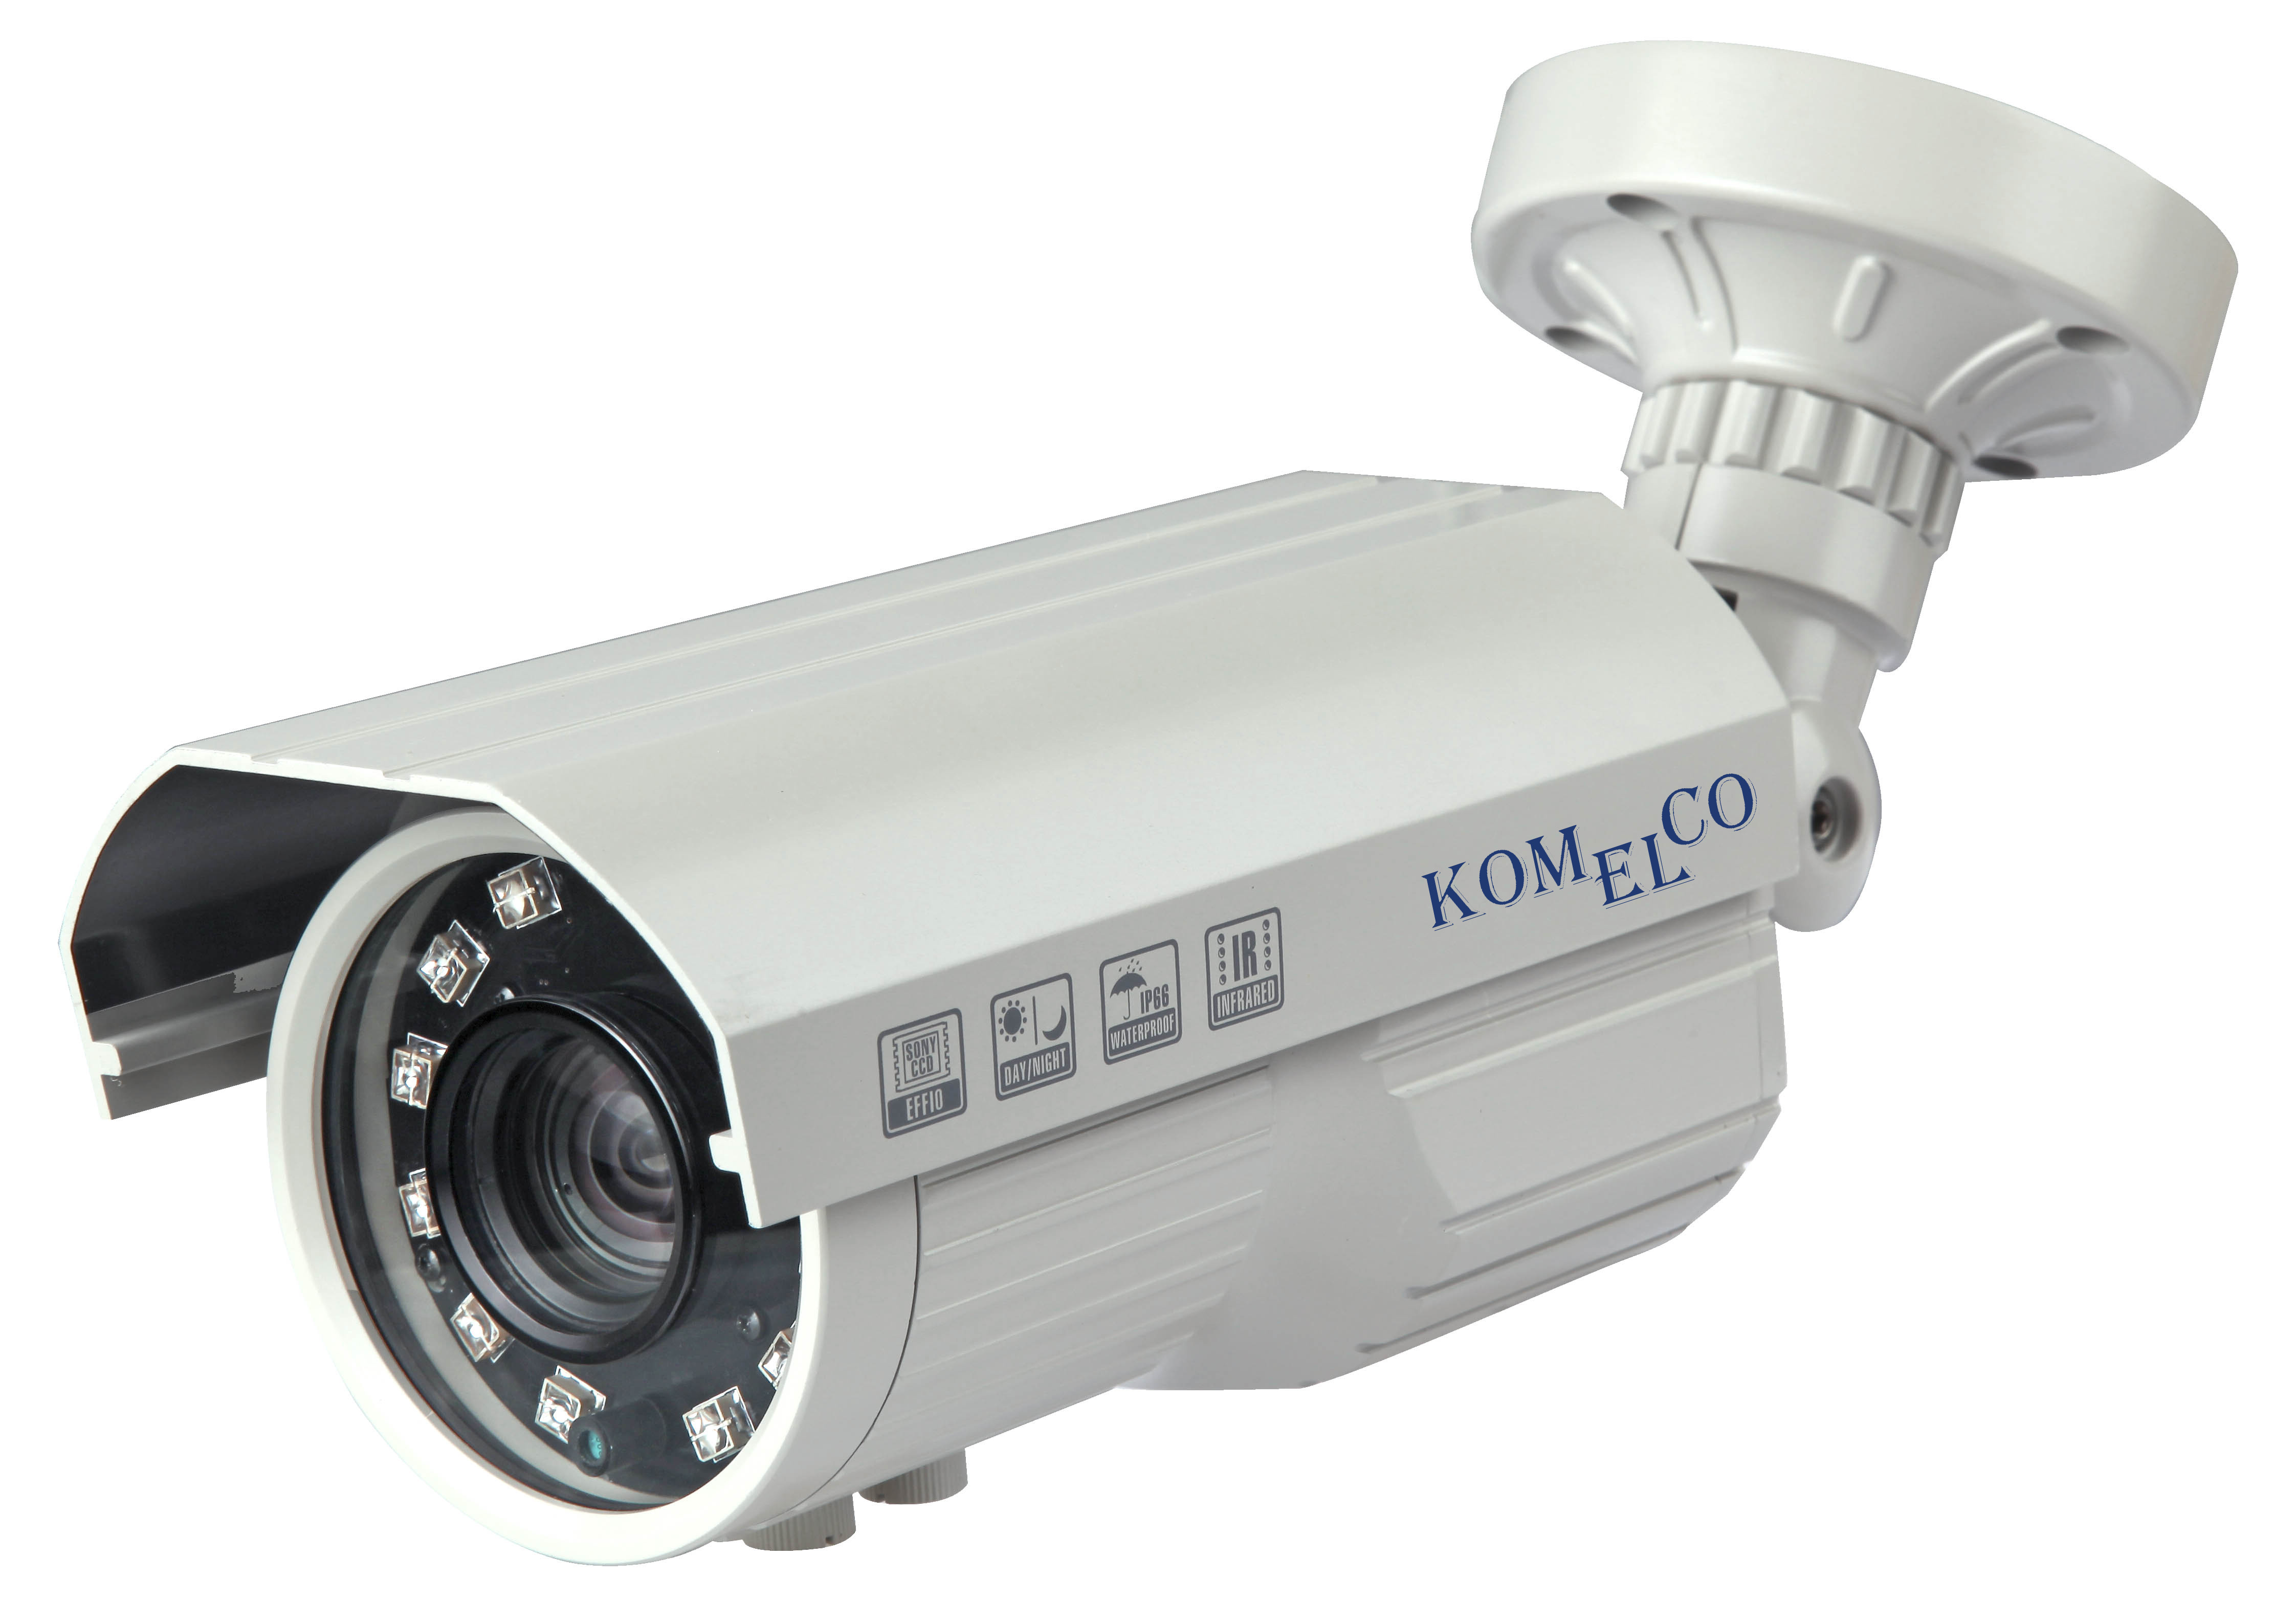 Цветная камера. Видеокамера AHD/TVI/CVI/CVBS 5мп уличная цилиндрическая ip66 (2.8-12мм). Видеокамера AHD/TVI/CVI/CVBS WISENET HCB-600. Видеокамера цветная 1/3 ИК 630 ТВЛ.